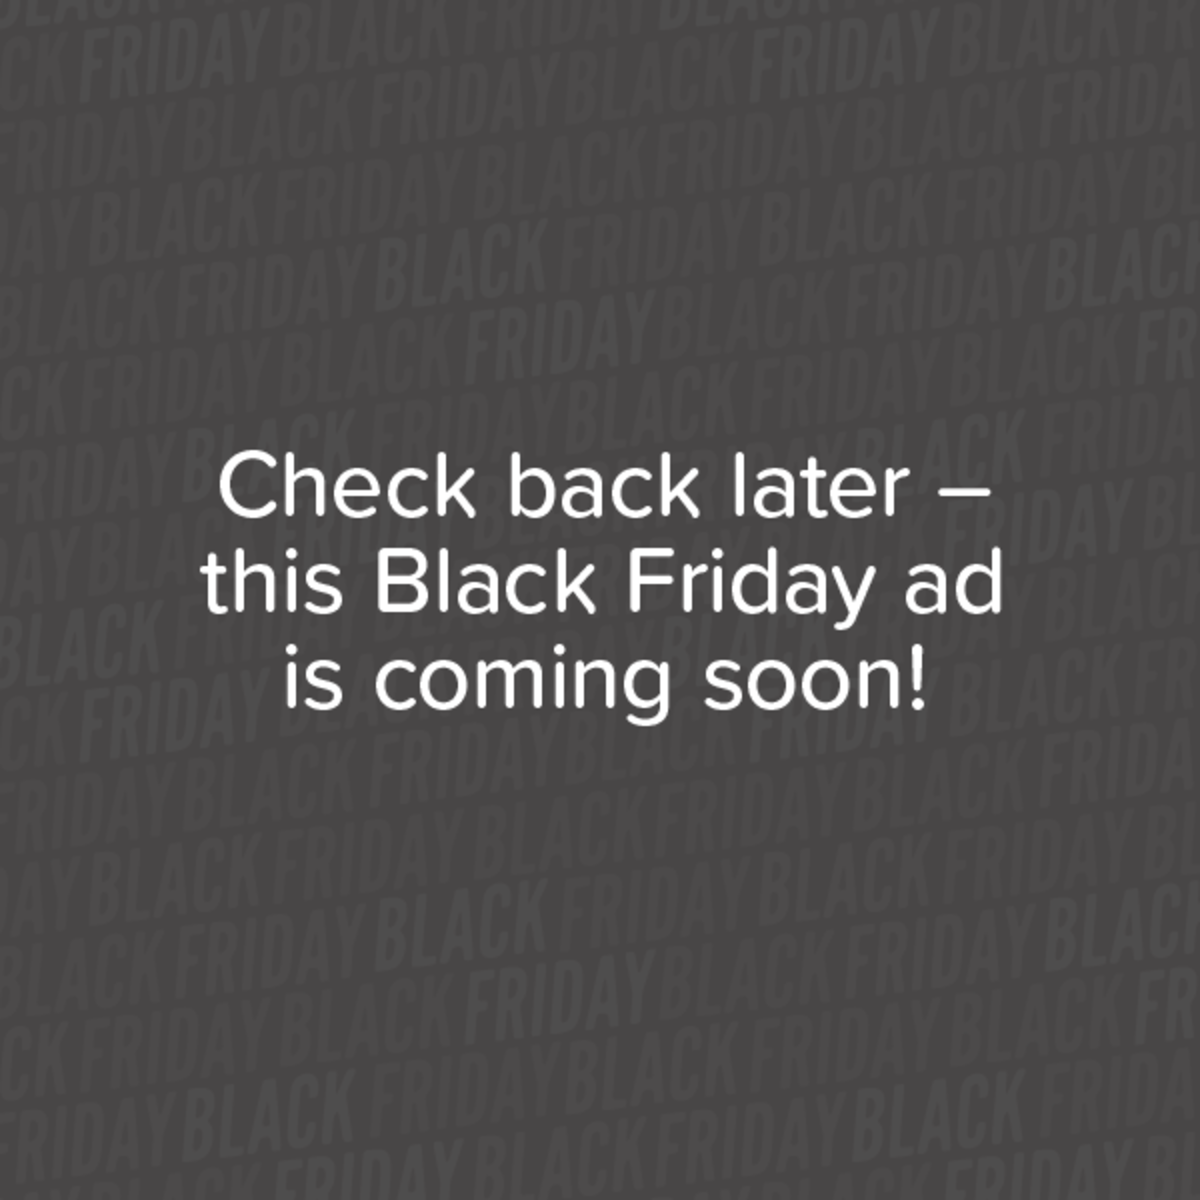 Bj S Black Friday 2020 Ad Deals Brad S Deals